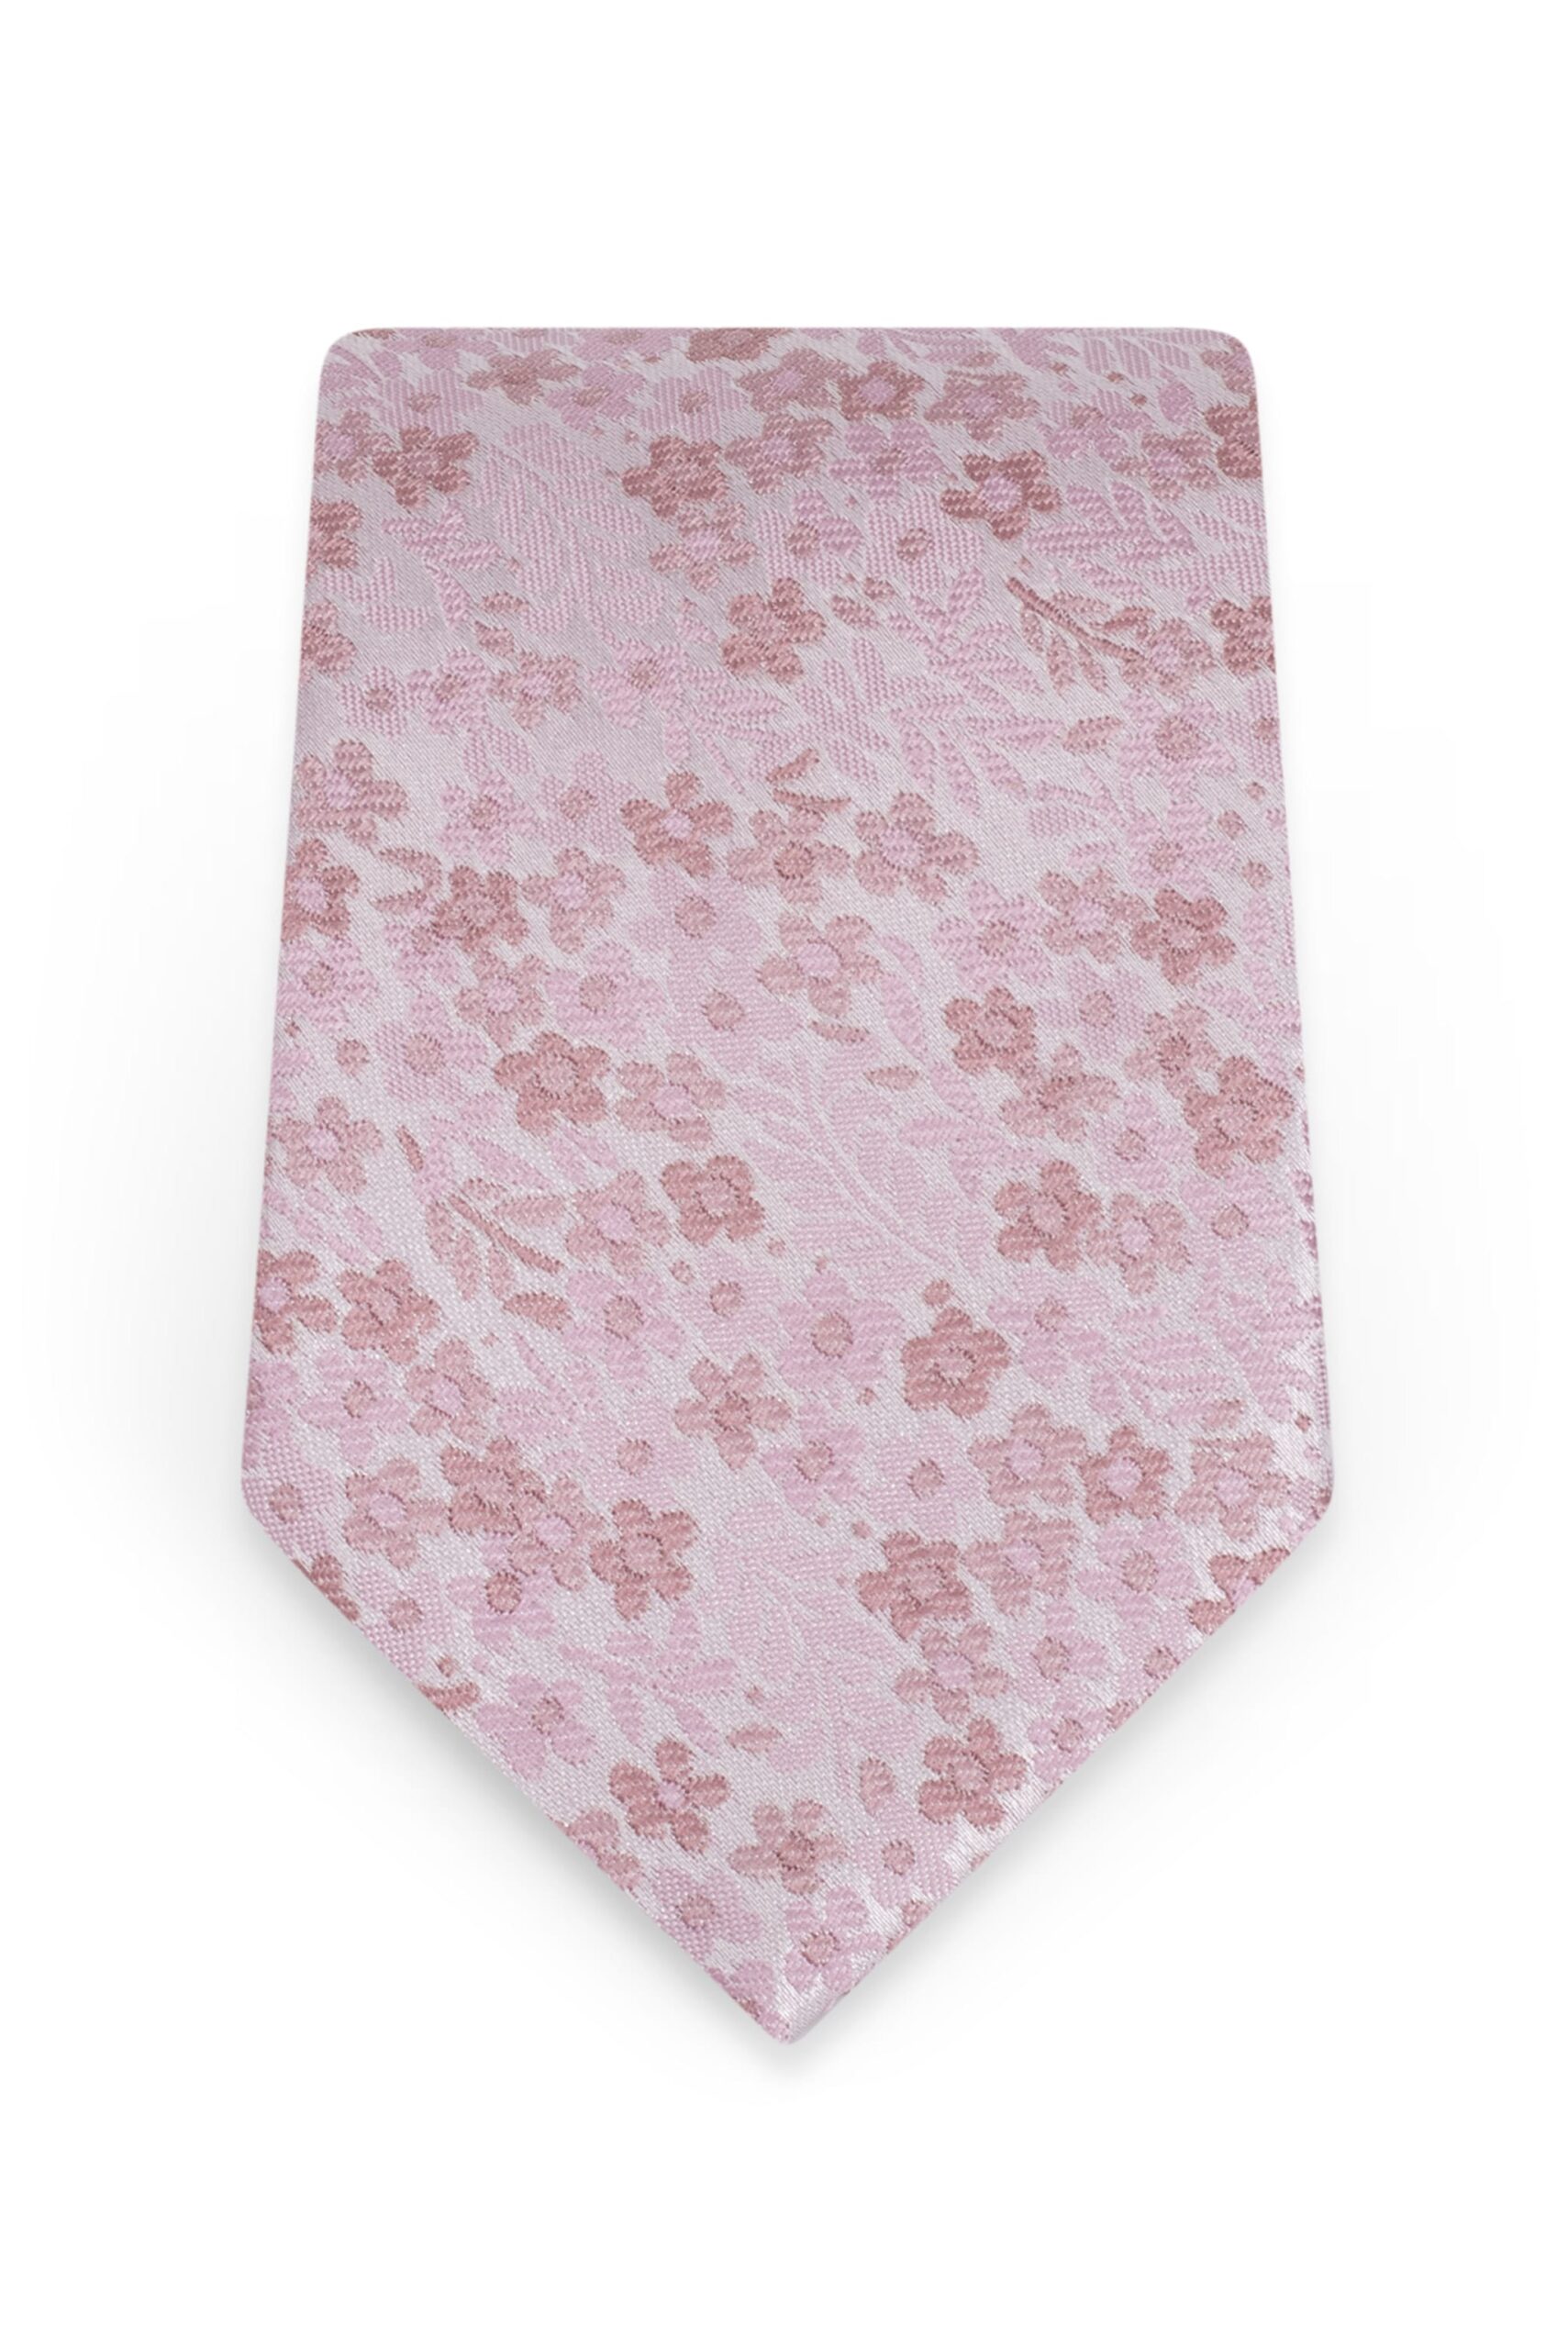 Floral Mauve Self-Tie Windsor Tie